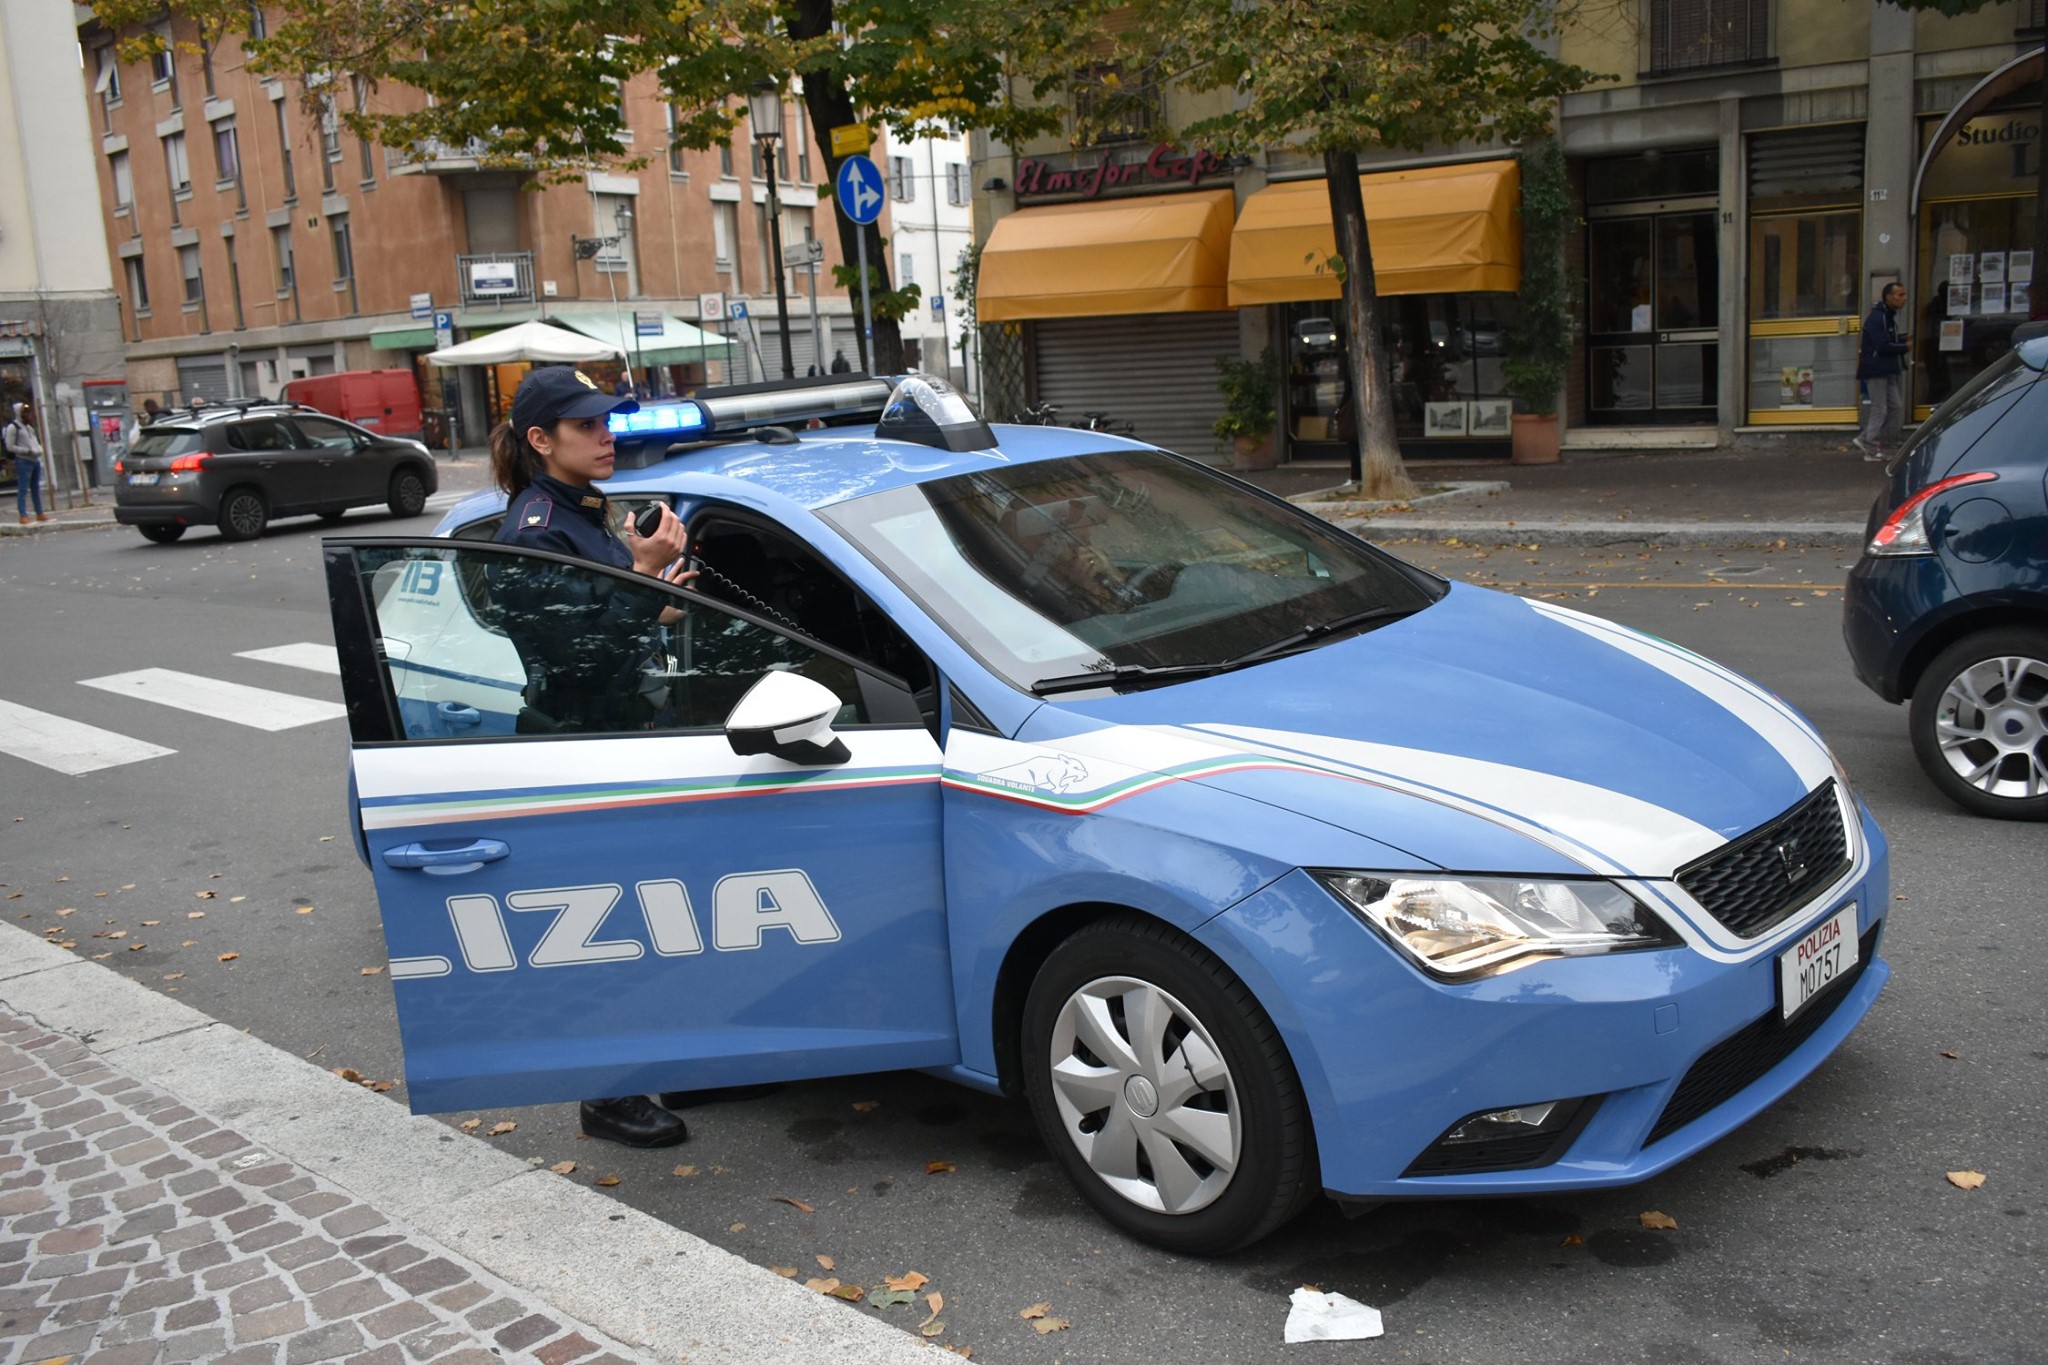 Polizia Di Stato Questure Sul Web Parma